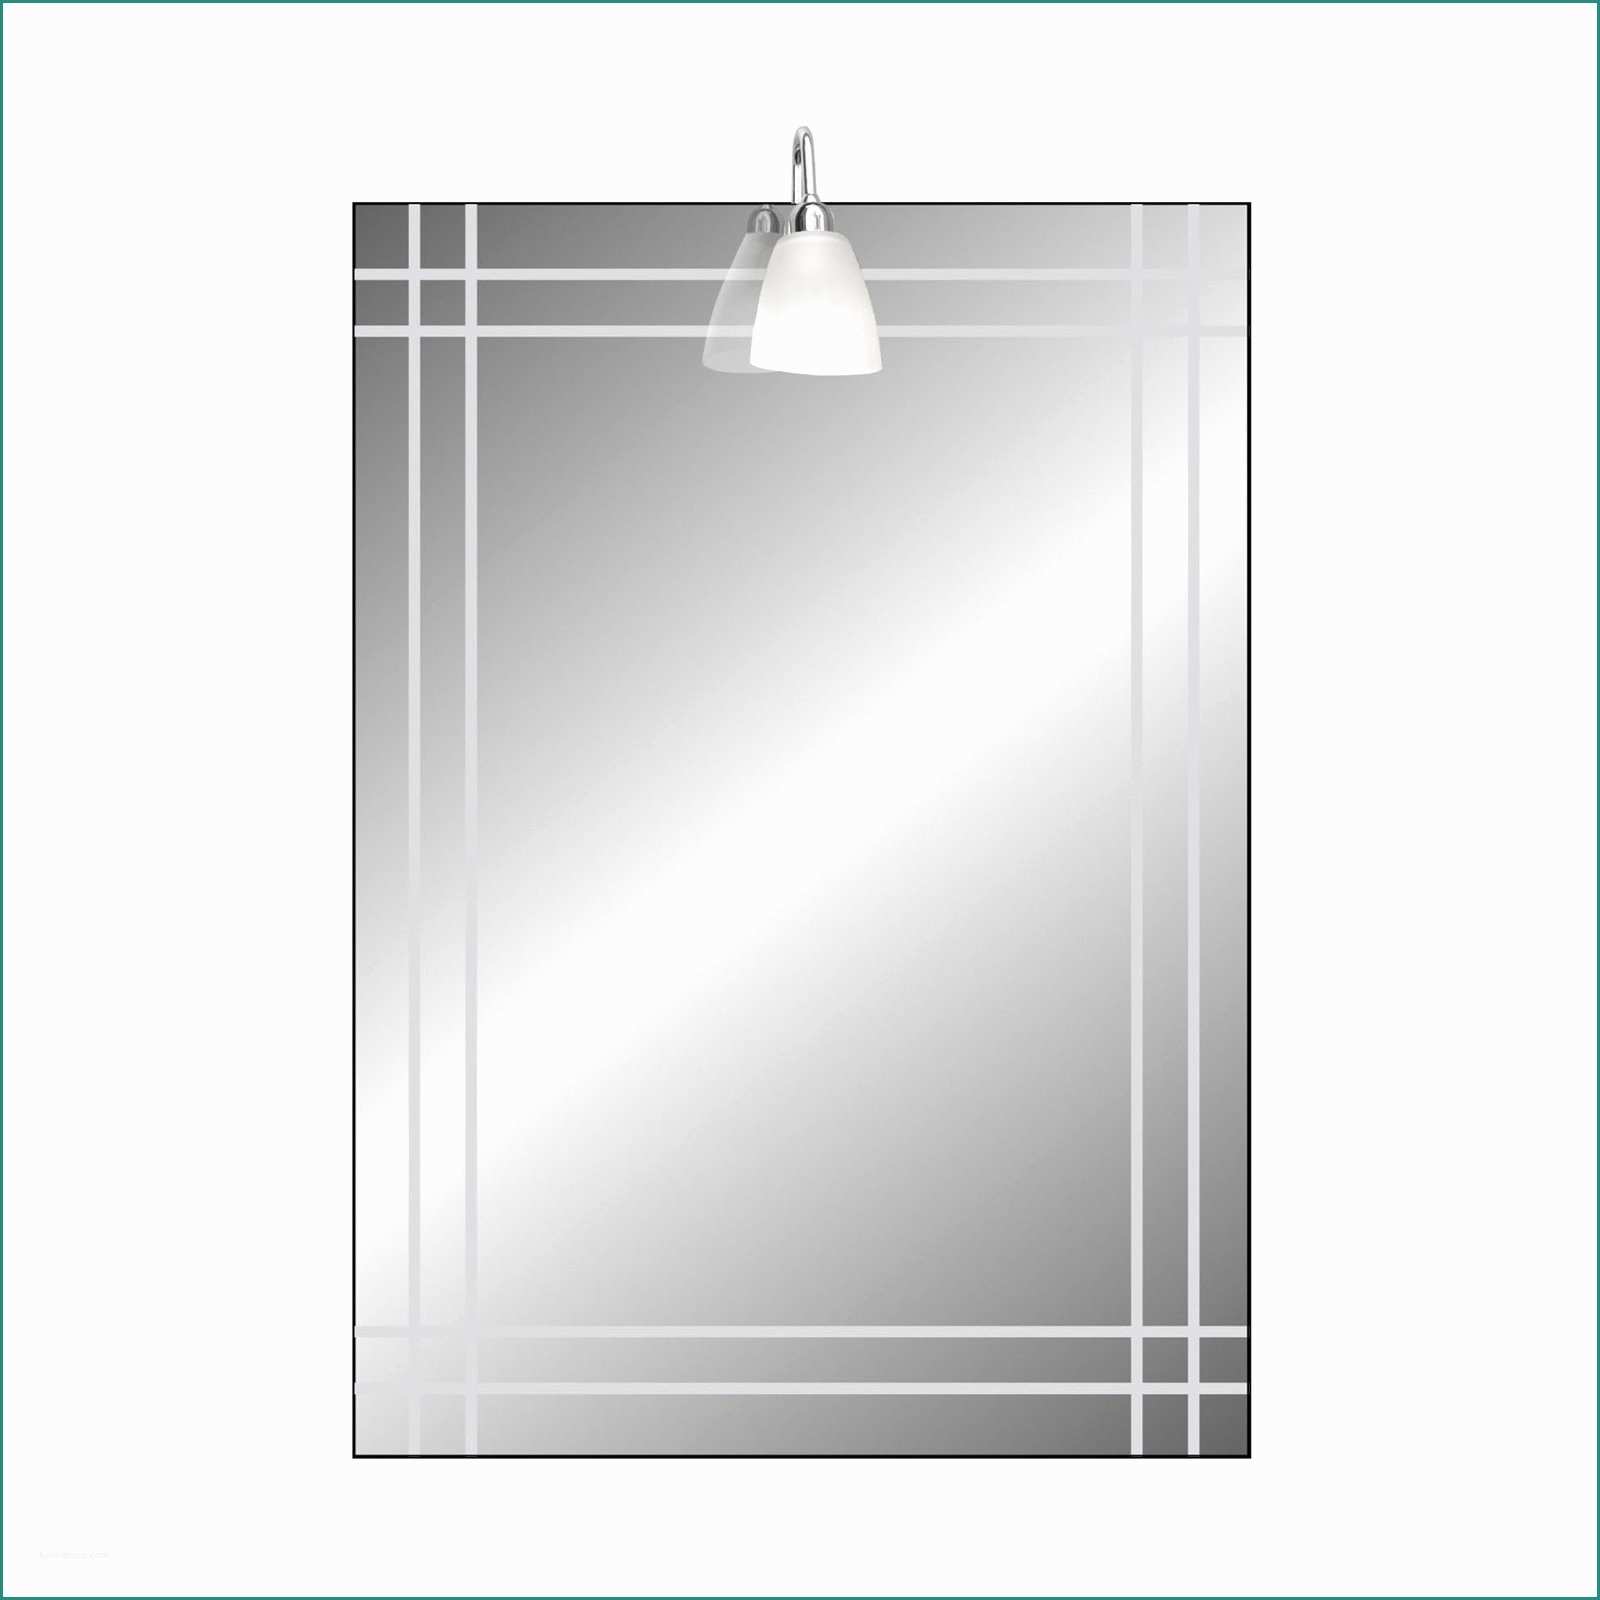 Illuminazione Bagno Leroy Merlin E Specchi sopra Il Lavabo Cose Di Casa